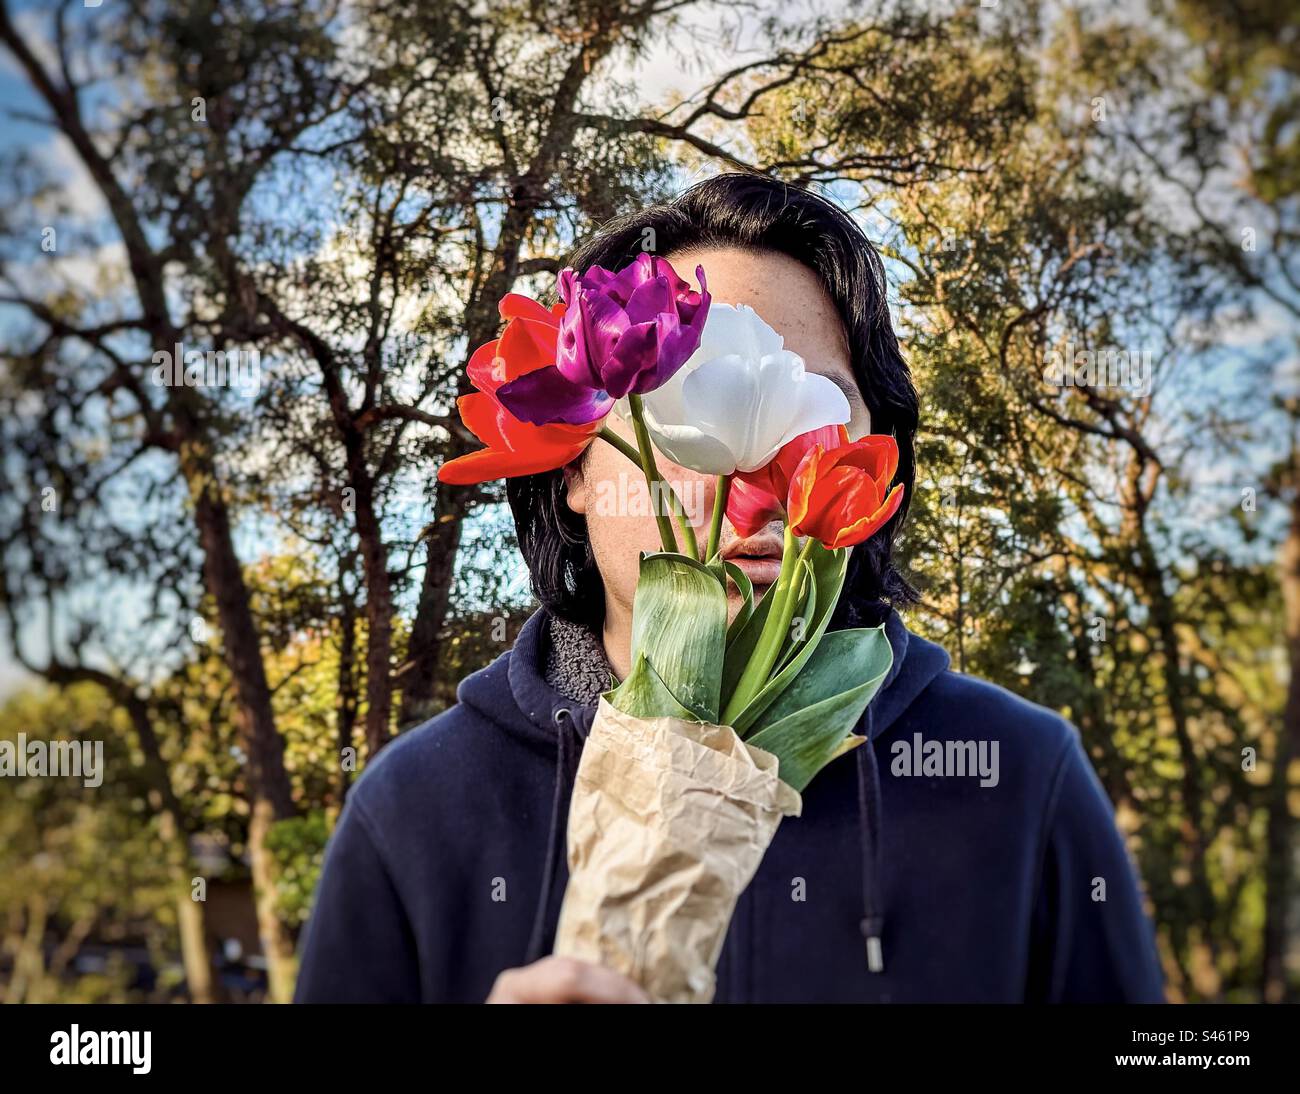 Portrait d'un jeune homme tenant un bouquet de quatre fleurs de tulipes multicolores contre les arbres et le ciel bleu. Visage obscurci. Thème du printemps. Banque D'Images